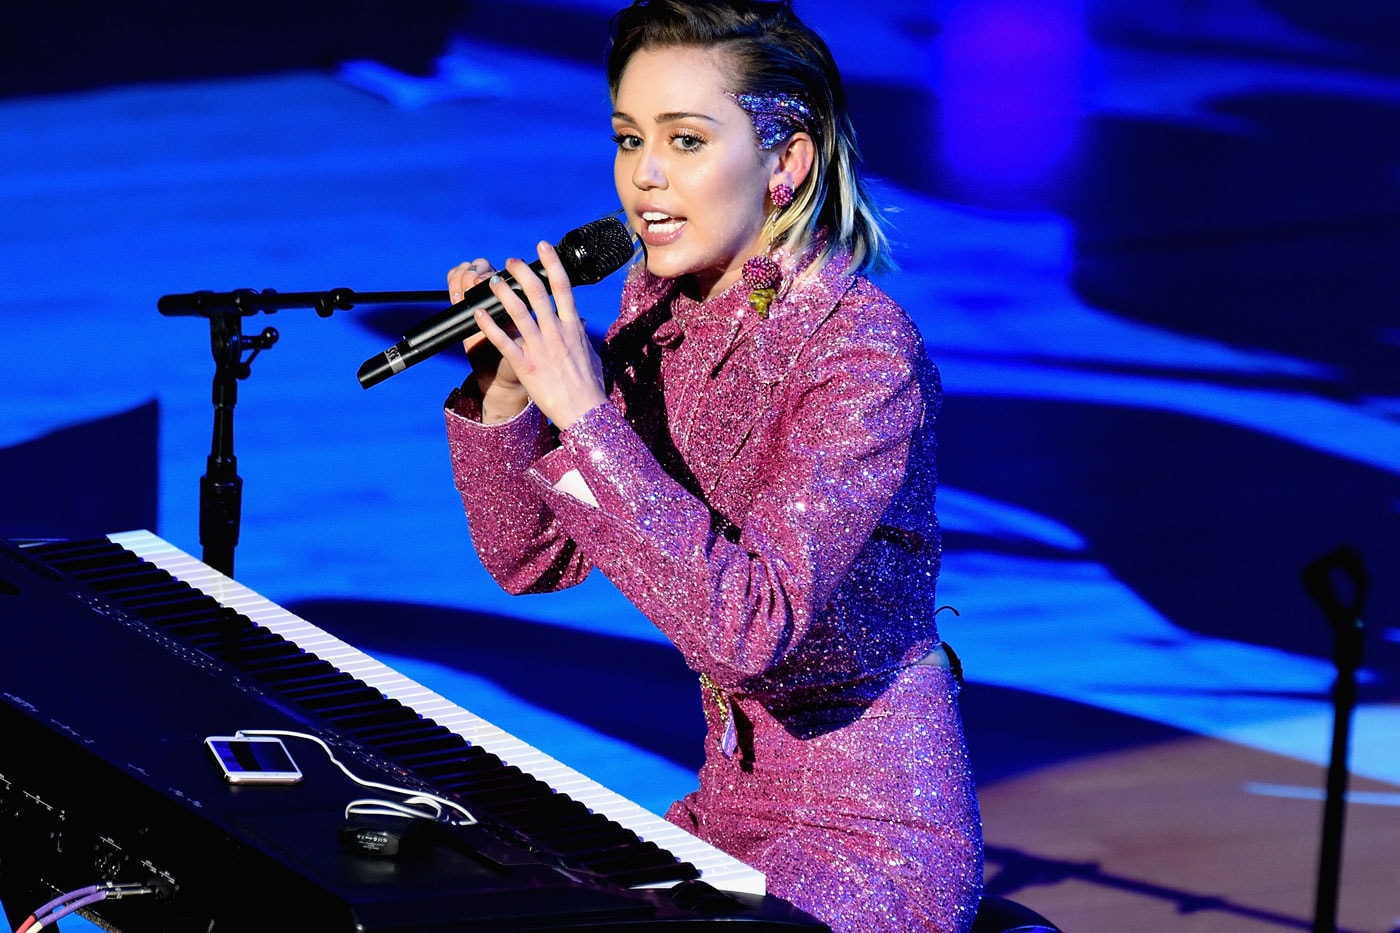 Miley Cyrus - Dooo It!